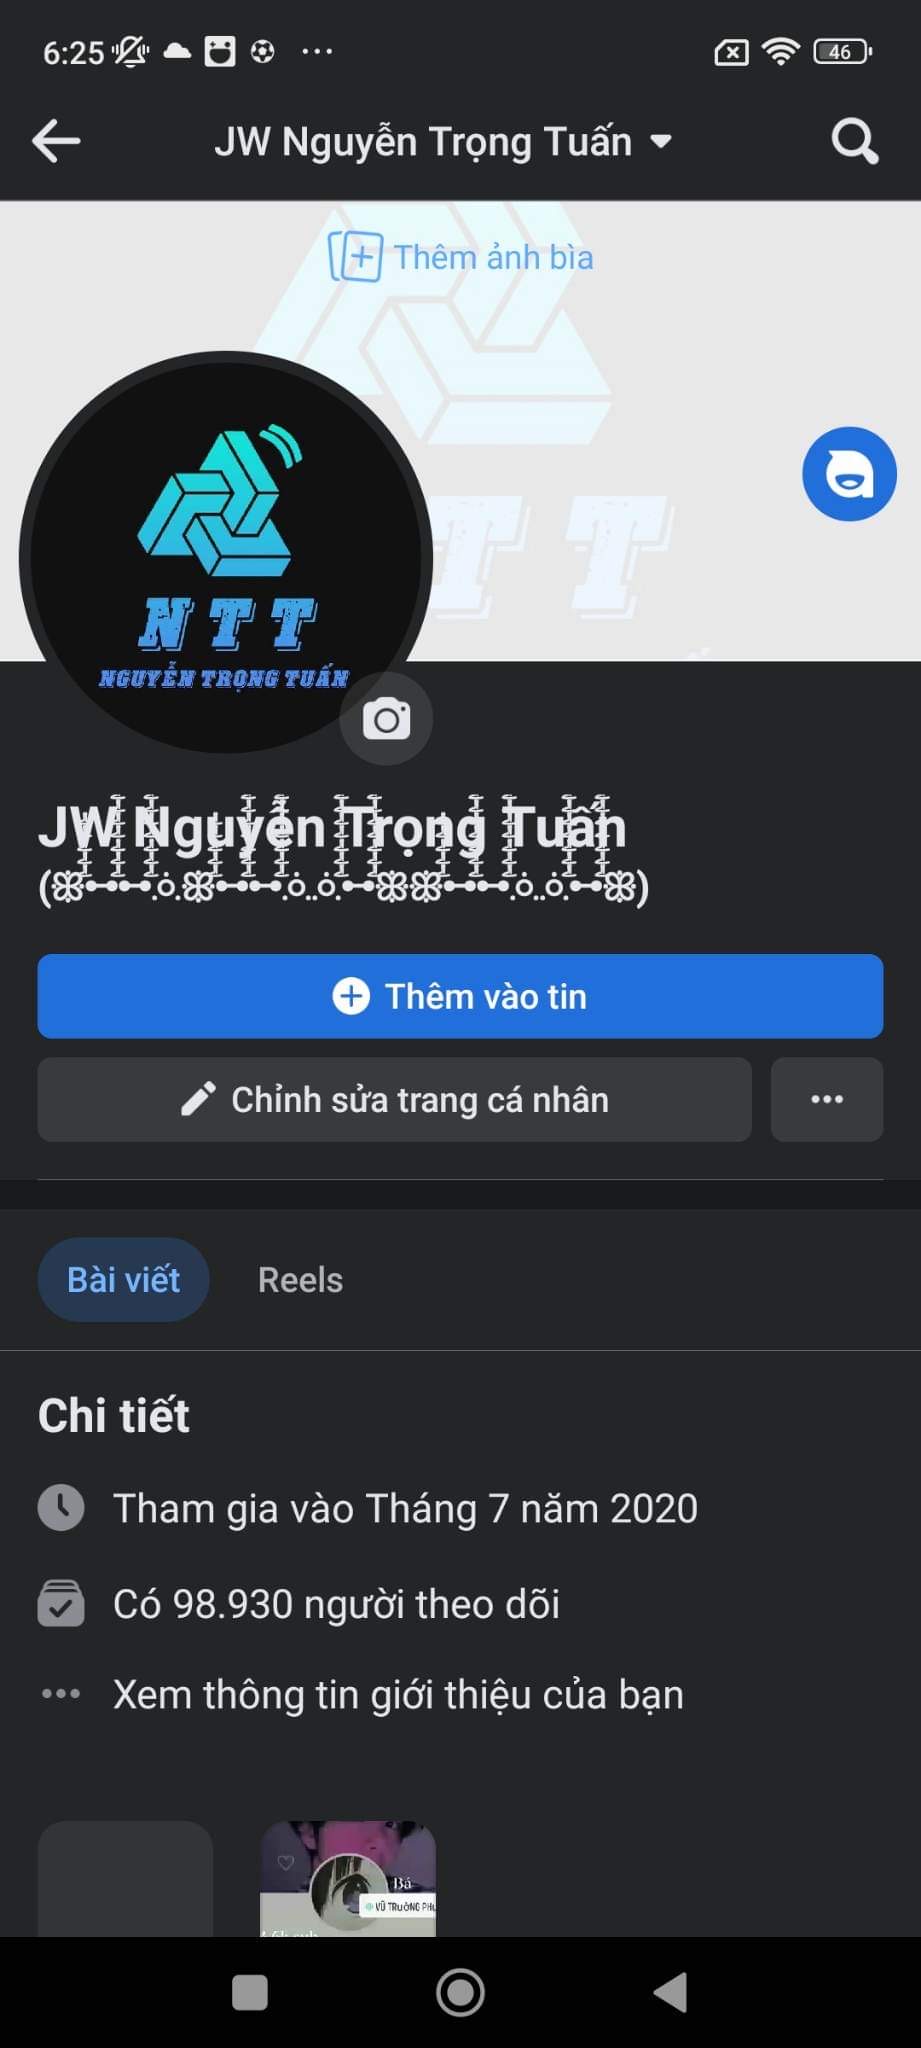 Nguyễn Trọng Tuấn - Chàng Trai Trẻ 2007 Đến Từ Nghệ An , đầy tham vọng trên con Đường Support Facebook